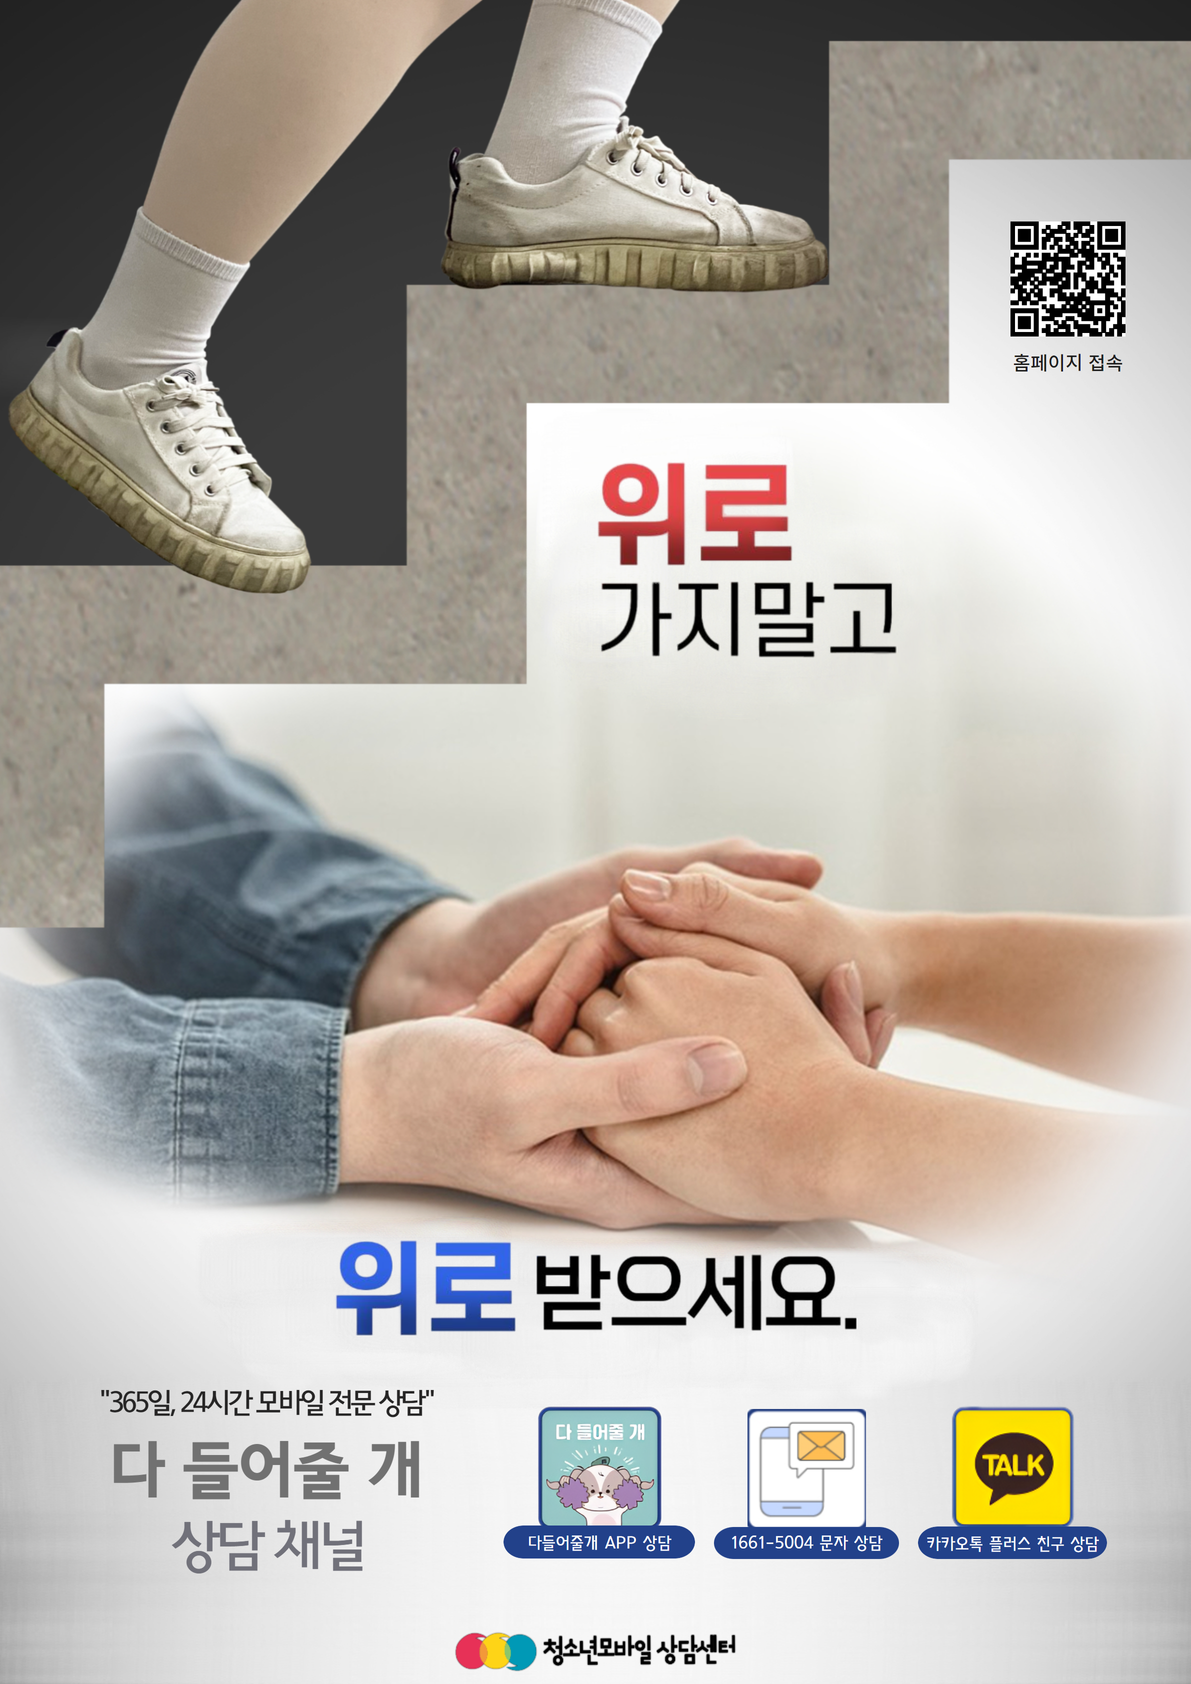 사본 -[붙임] 청소년모바일상담센터 상담채널 포스터